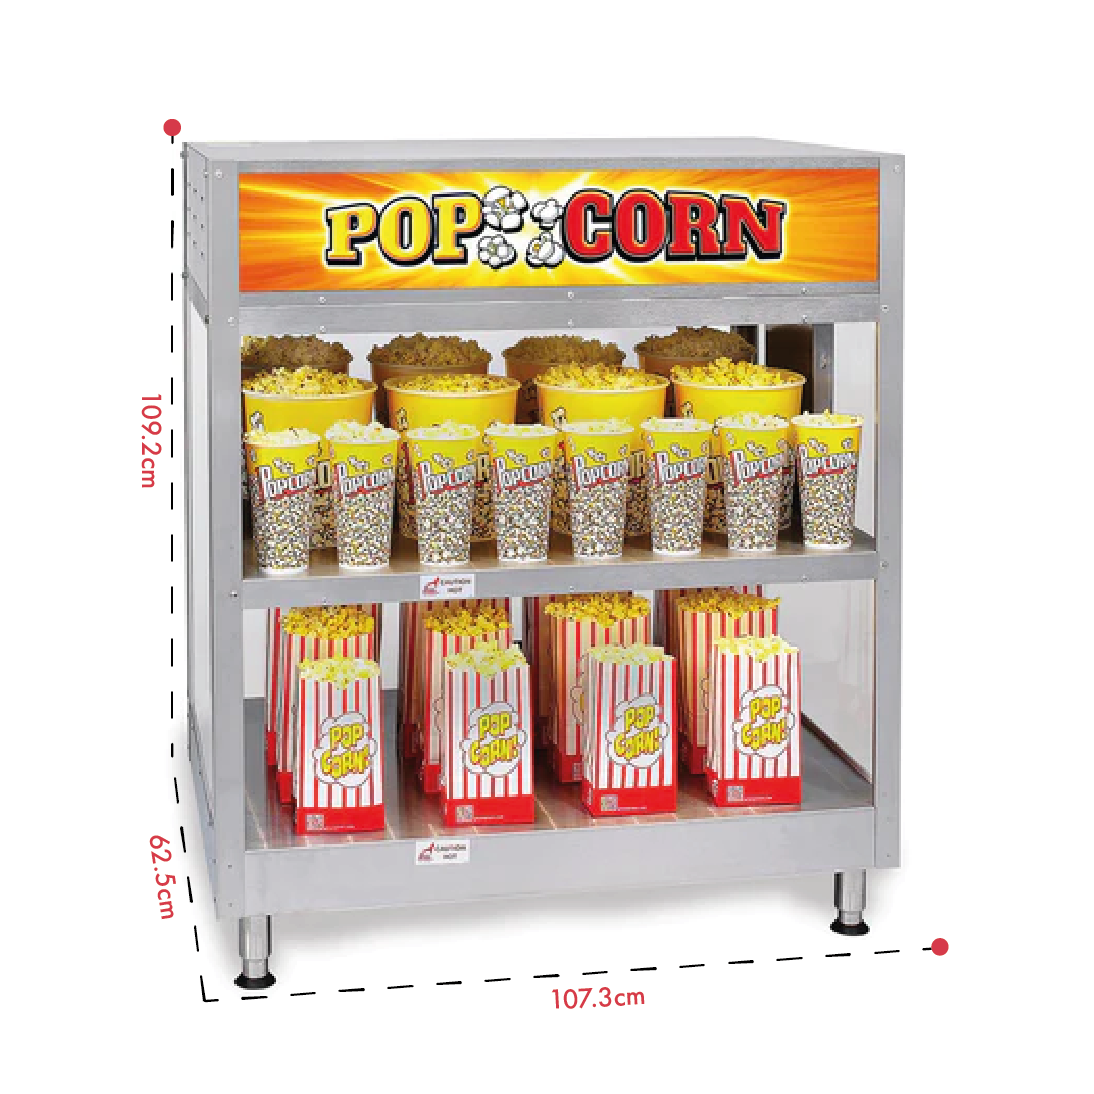 52-oz. Medallion Industrial Popcorn Machine